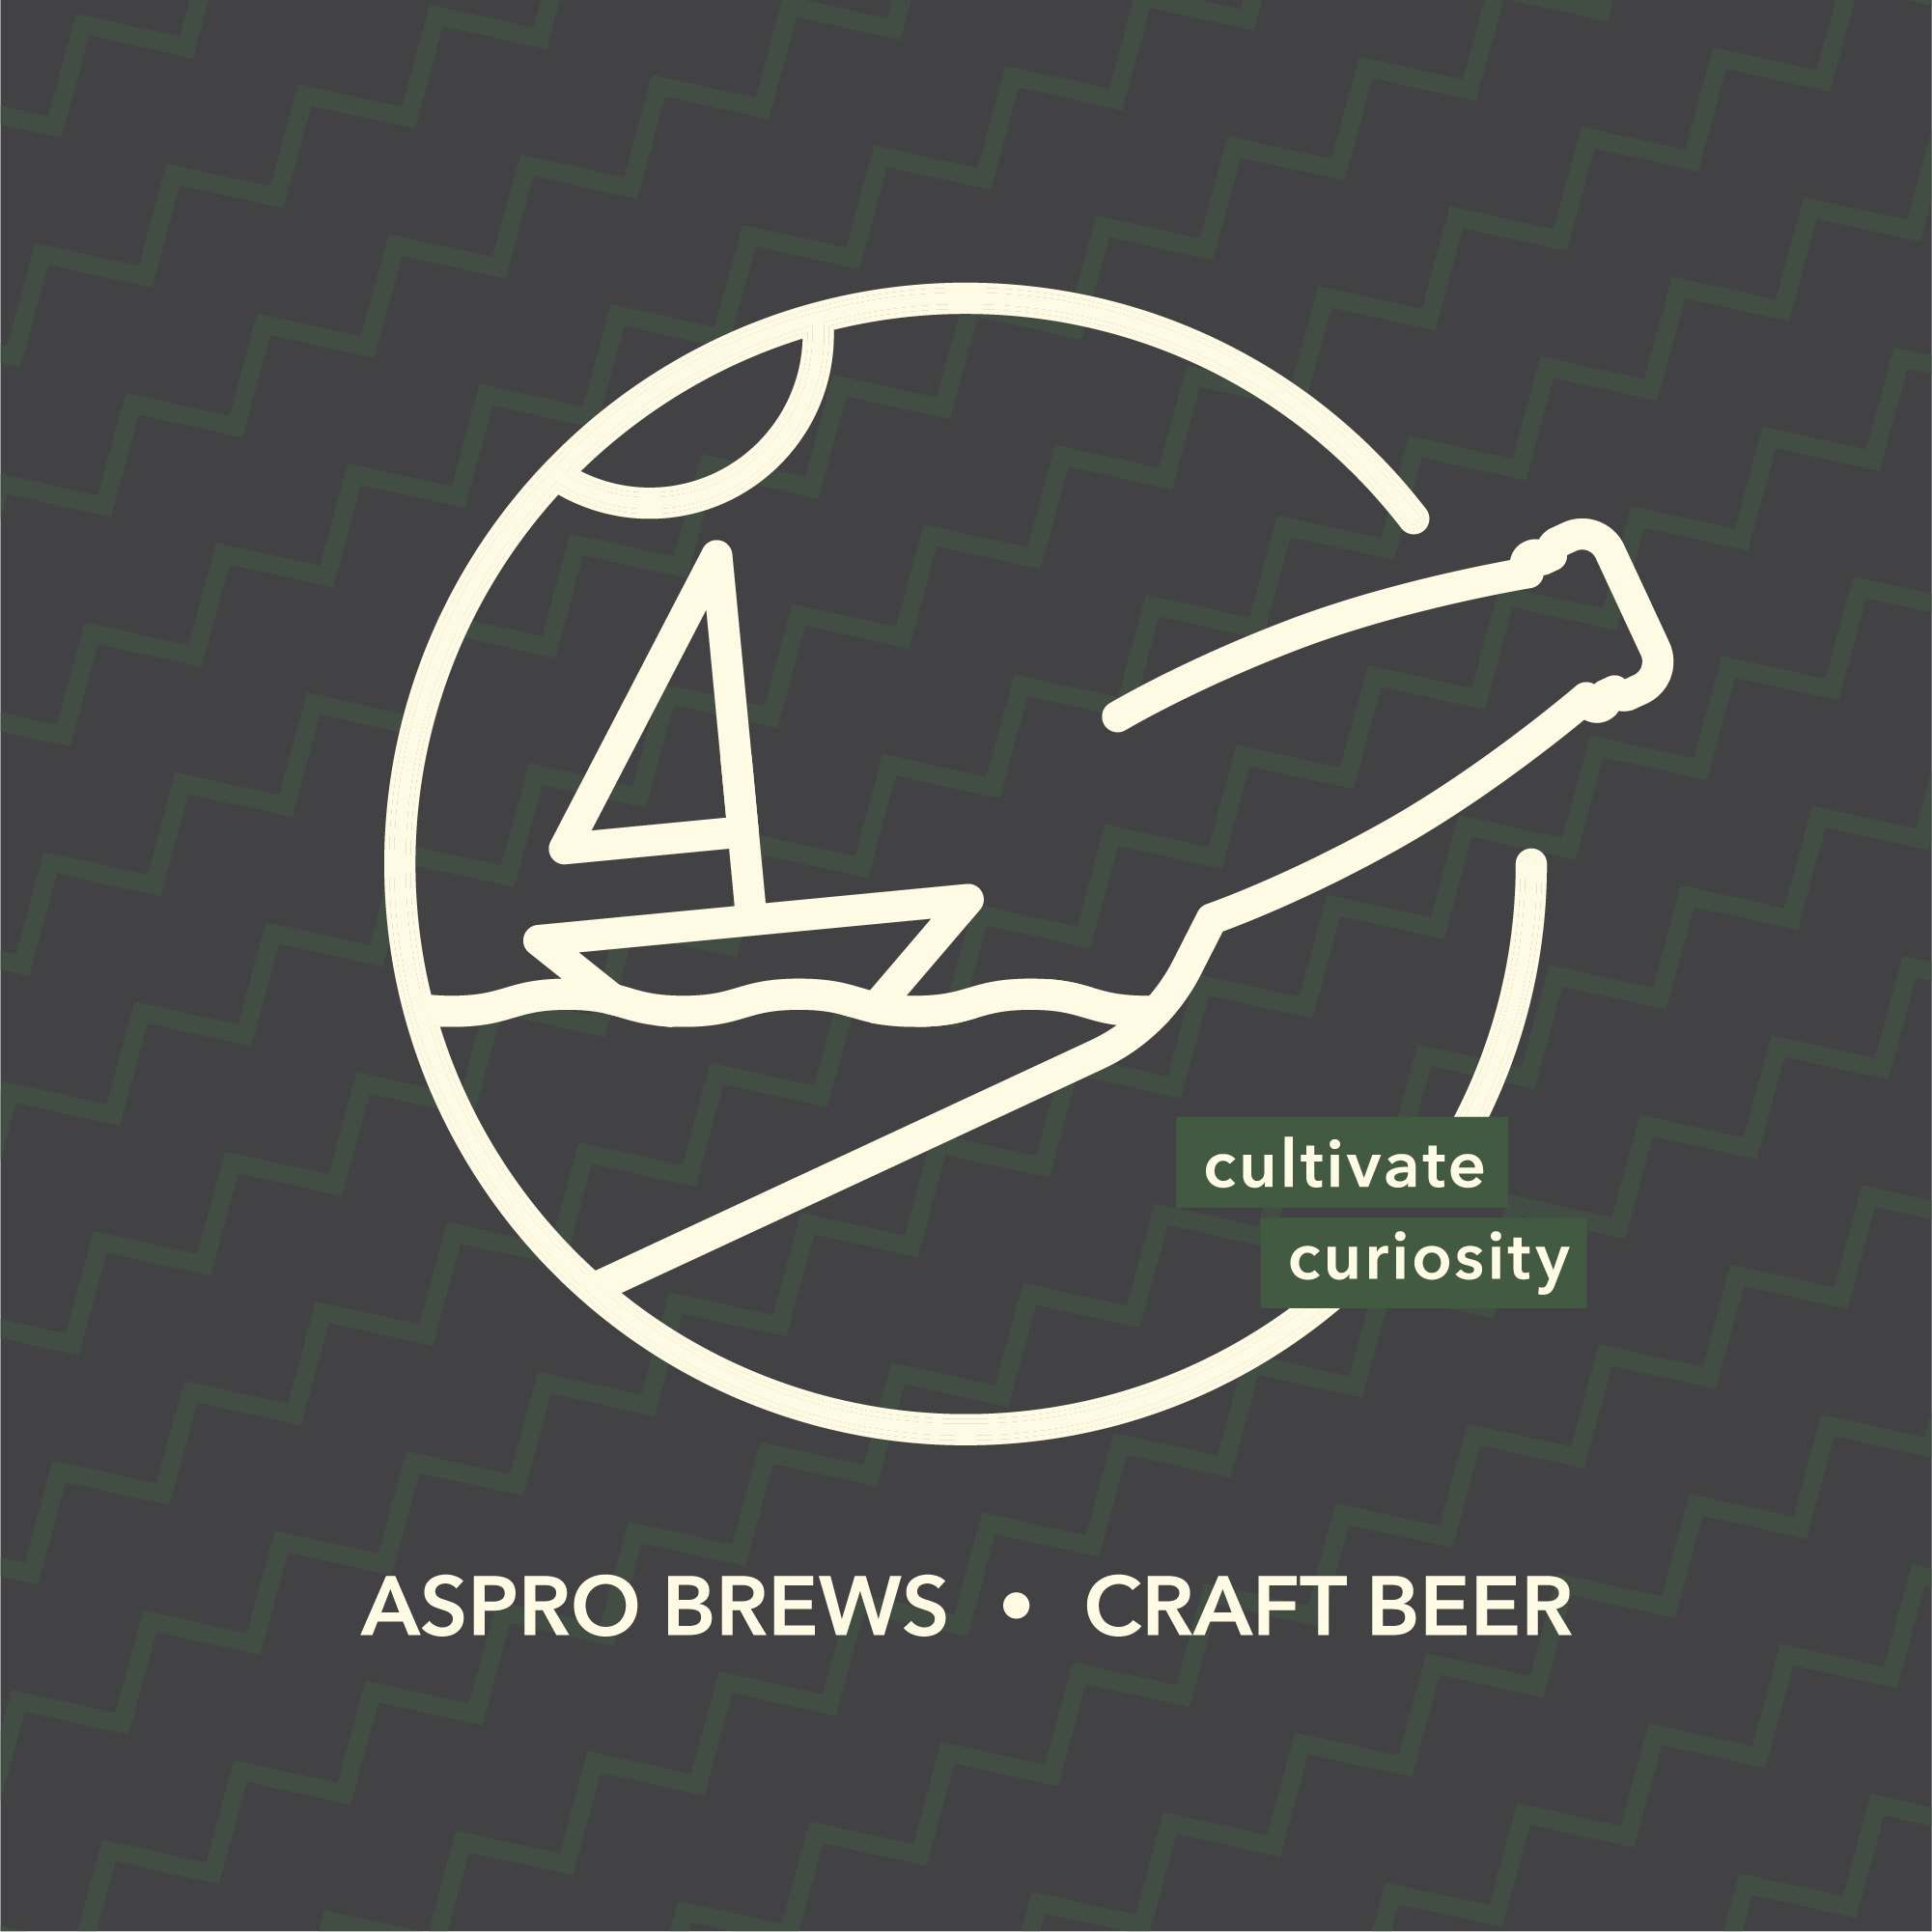 Aspro Brews, cultivate curiosity